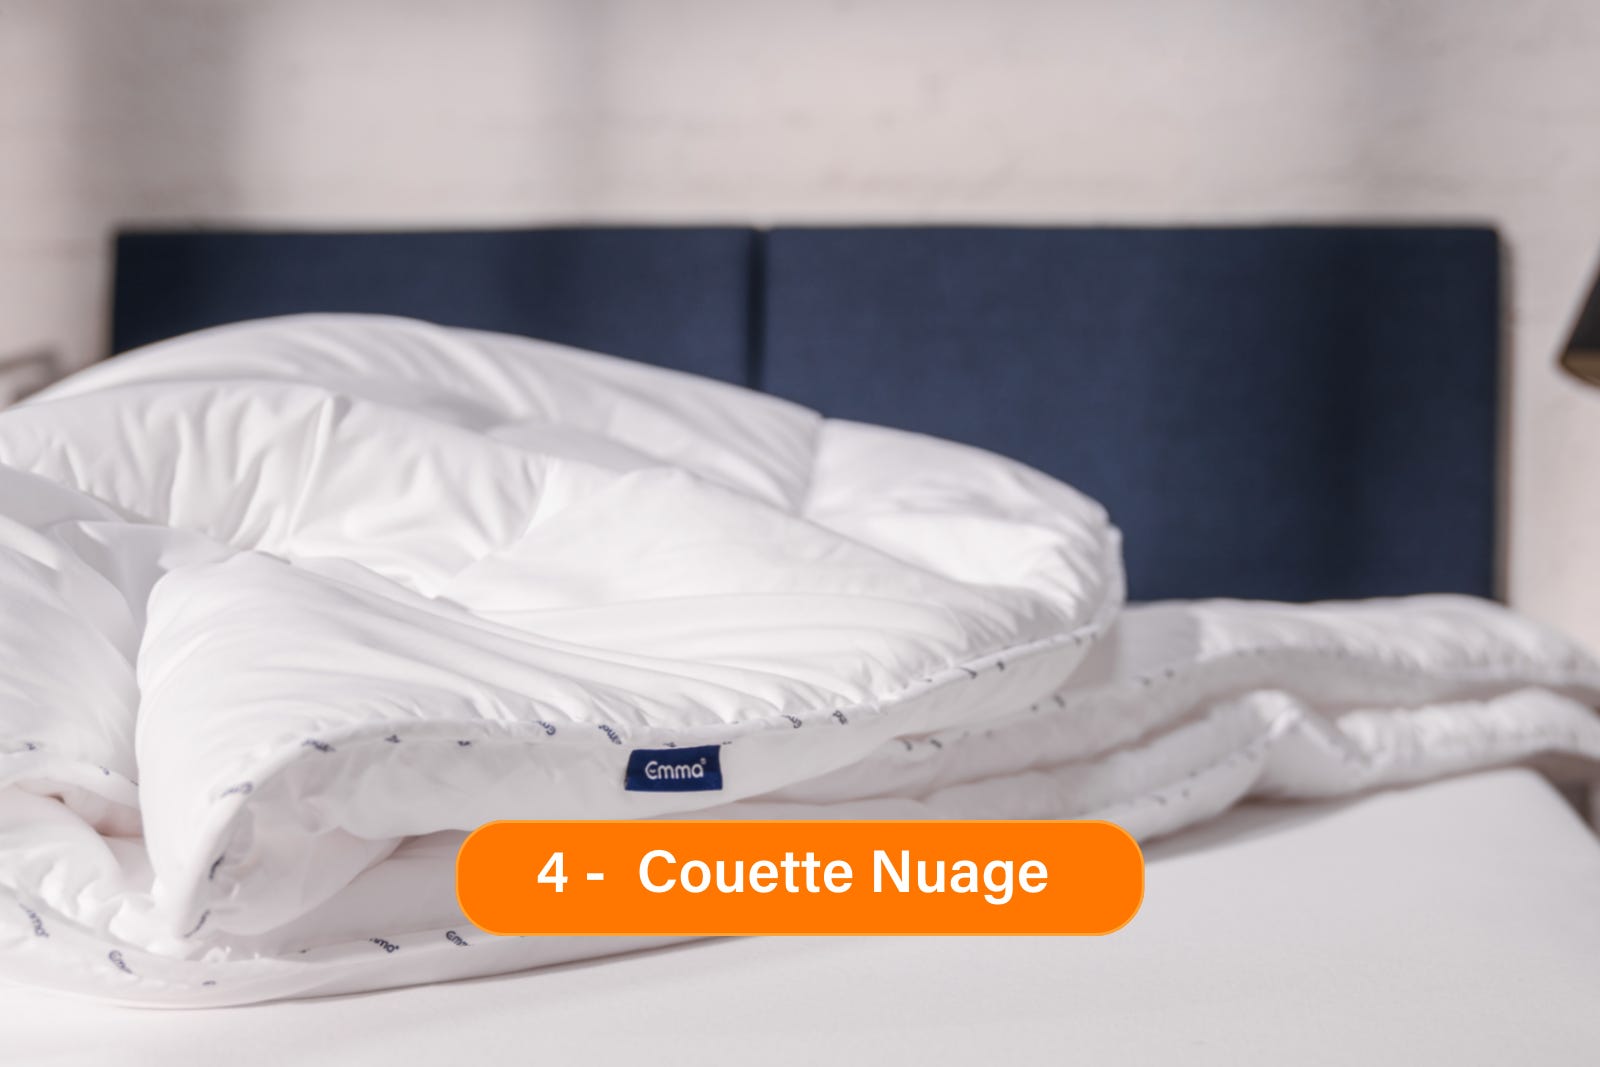 Couette_Nuage_bundle.png